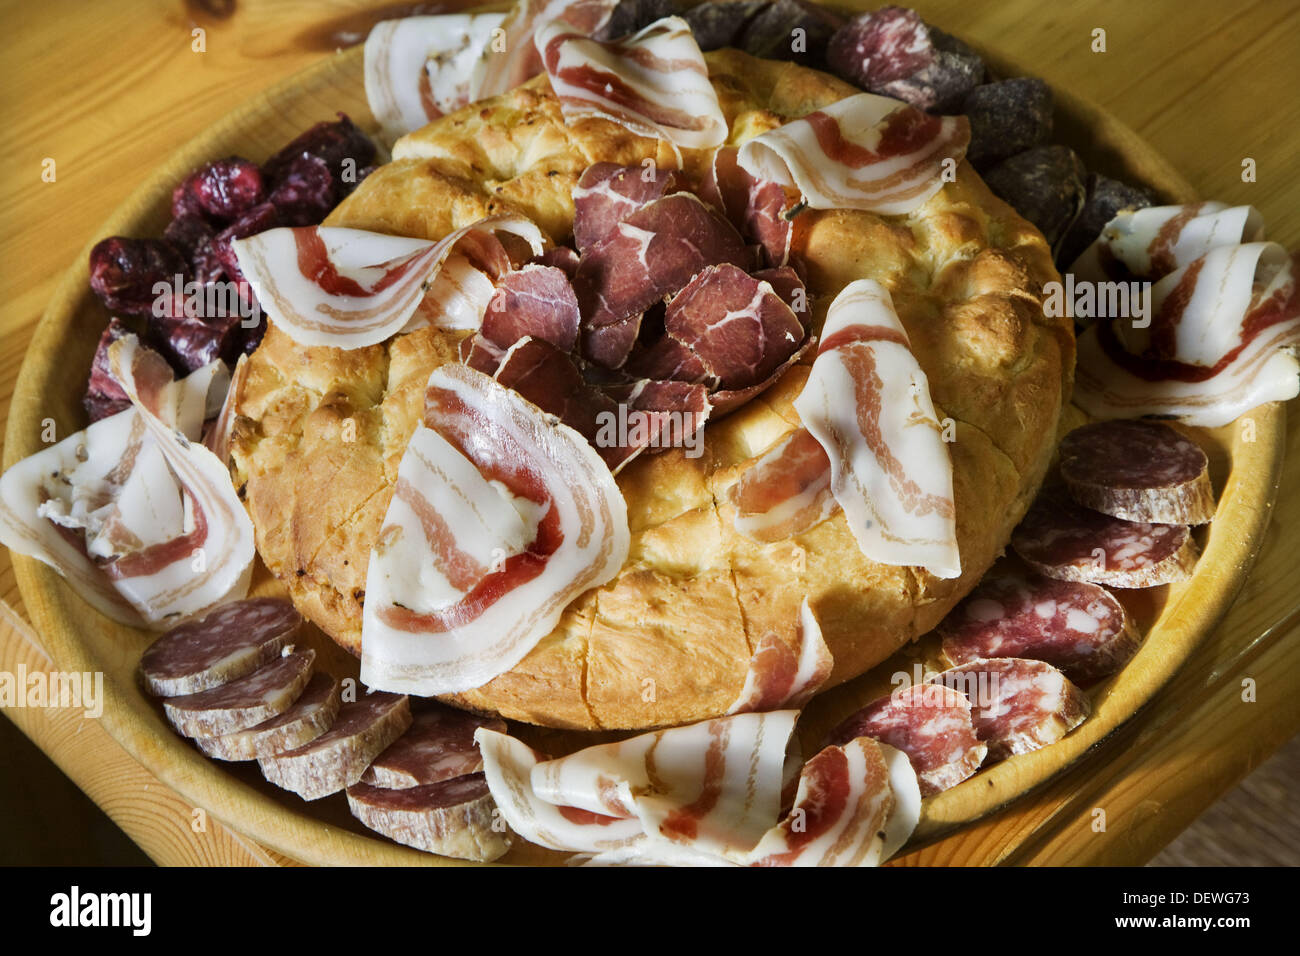 La Focaccia (tipico pane salato) con carni fredde: coppa (simile al prosciutto, pancetta e la mocetta (salumi). Valle d'Aosta. Italia Foto Stock